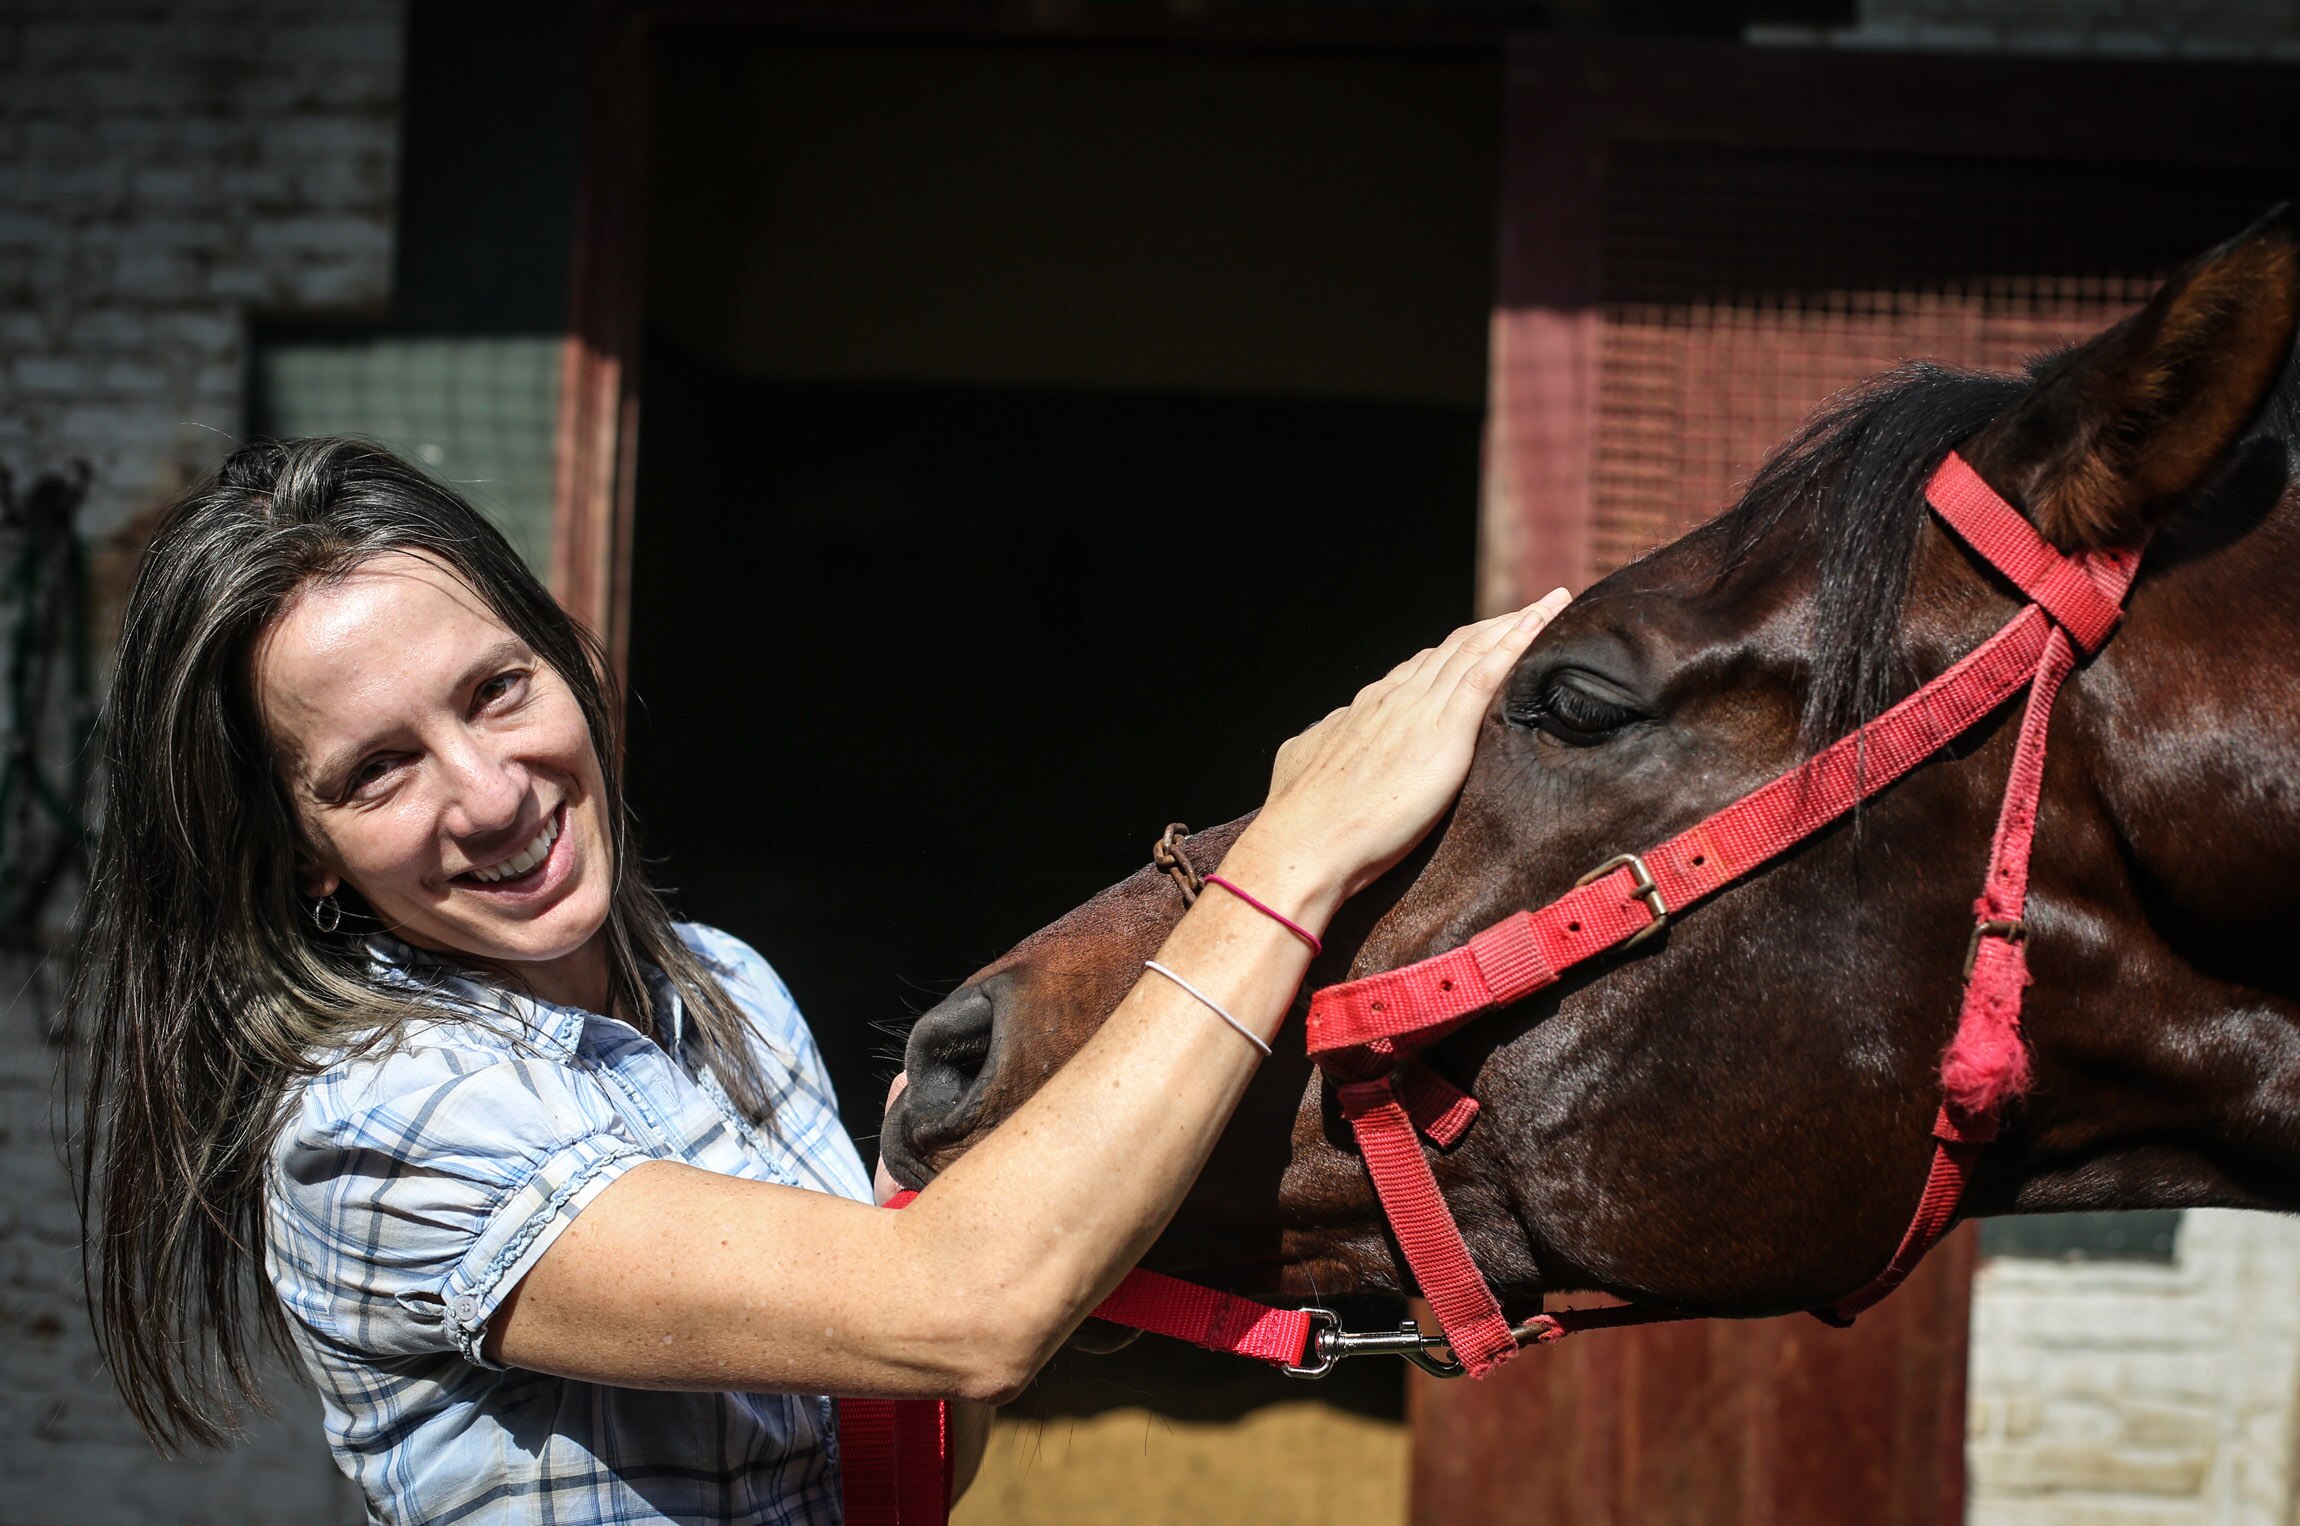 Corridas de cavalos: lesões e sacrifícios impactam fãs e críticos -  Internacional - Estado de Minas